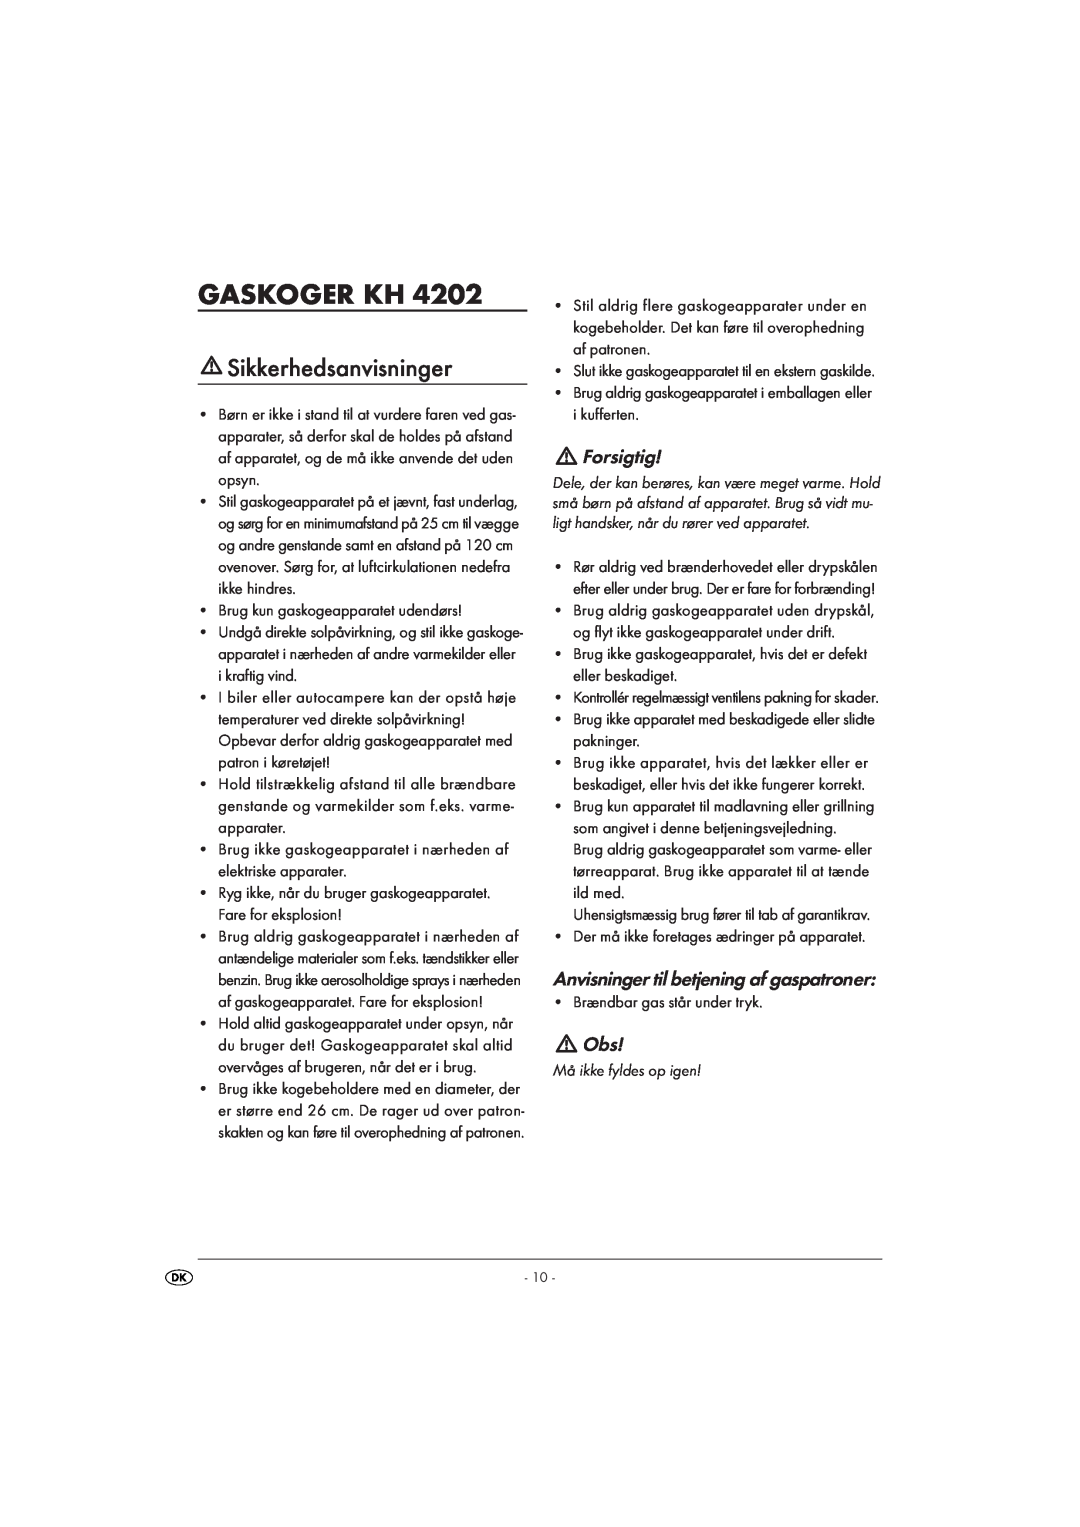 Kompernass KH4202 manual Gaskoger Kh, Sikkerhedsanvisninger, Forsigtig, Anvisninger til betjening af gaspatroner 